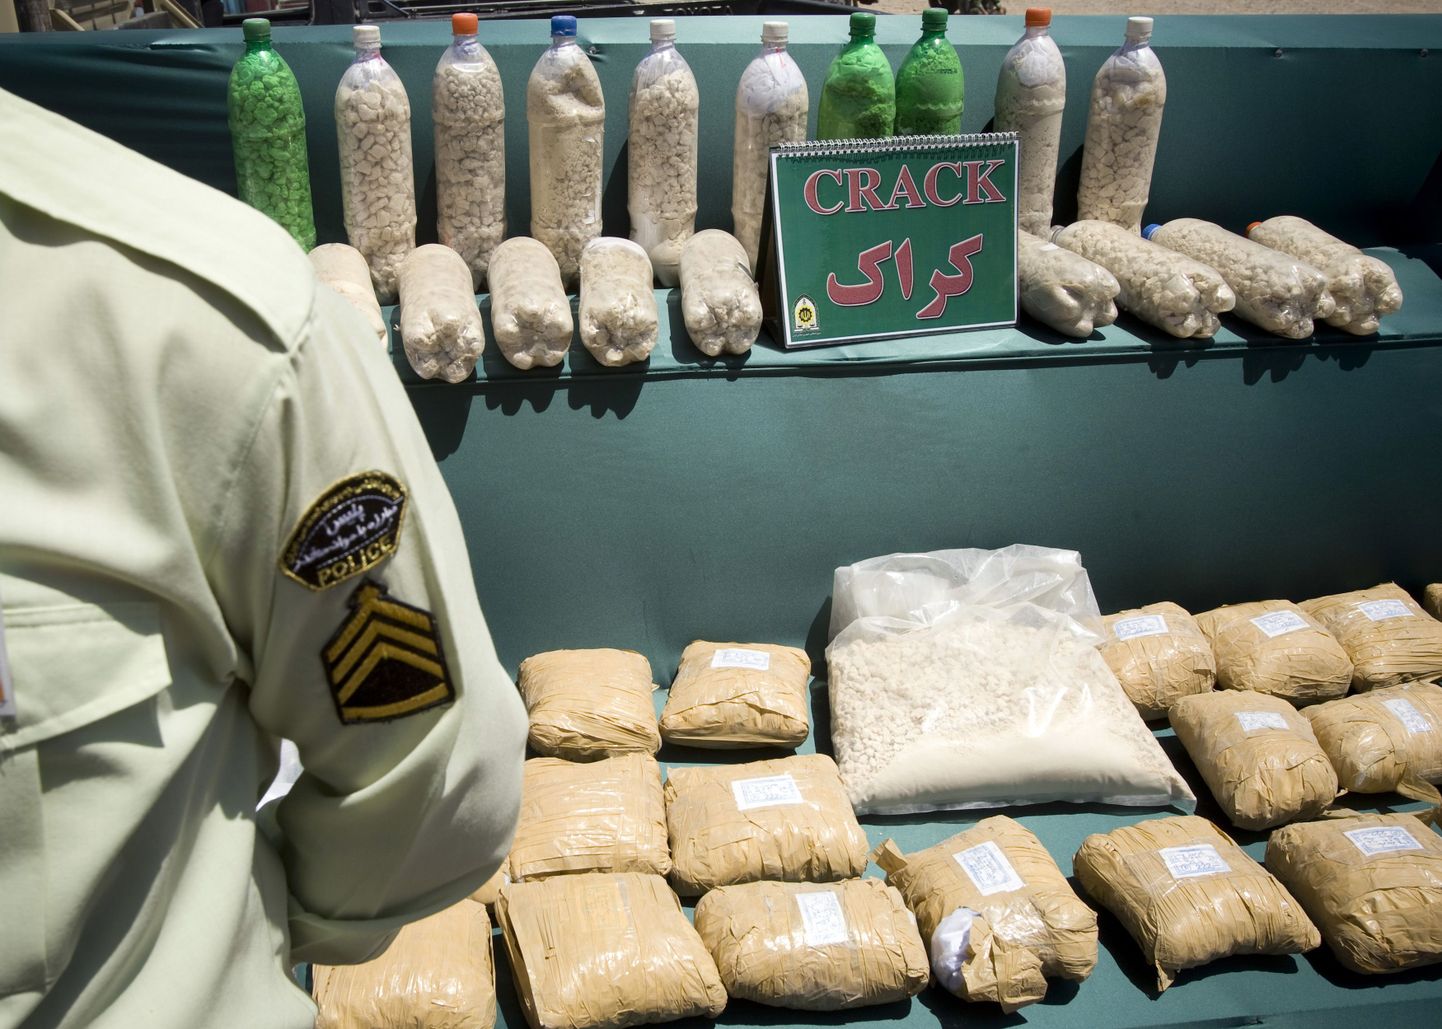 Iraani narkopolitseinik konfiskeeritud mõnuainete juures.